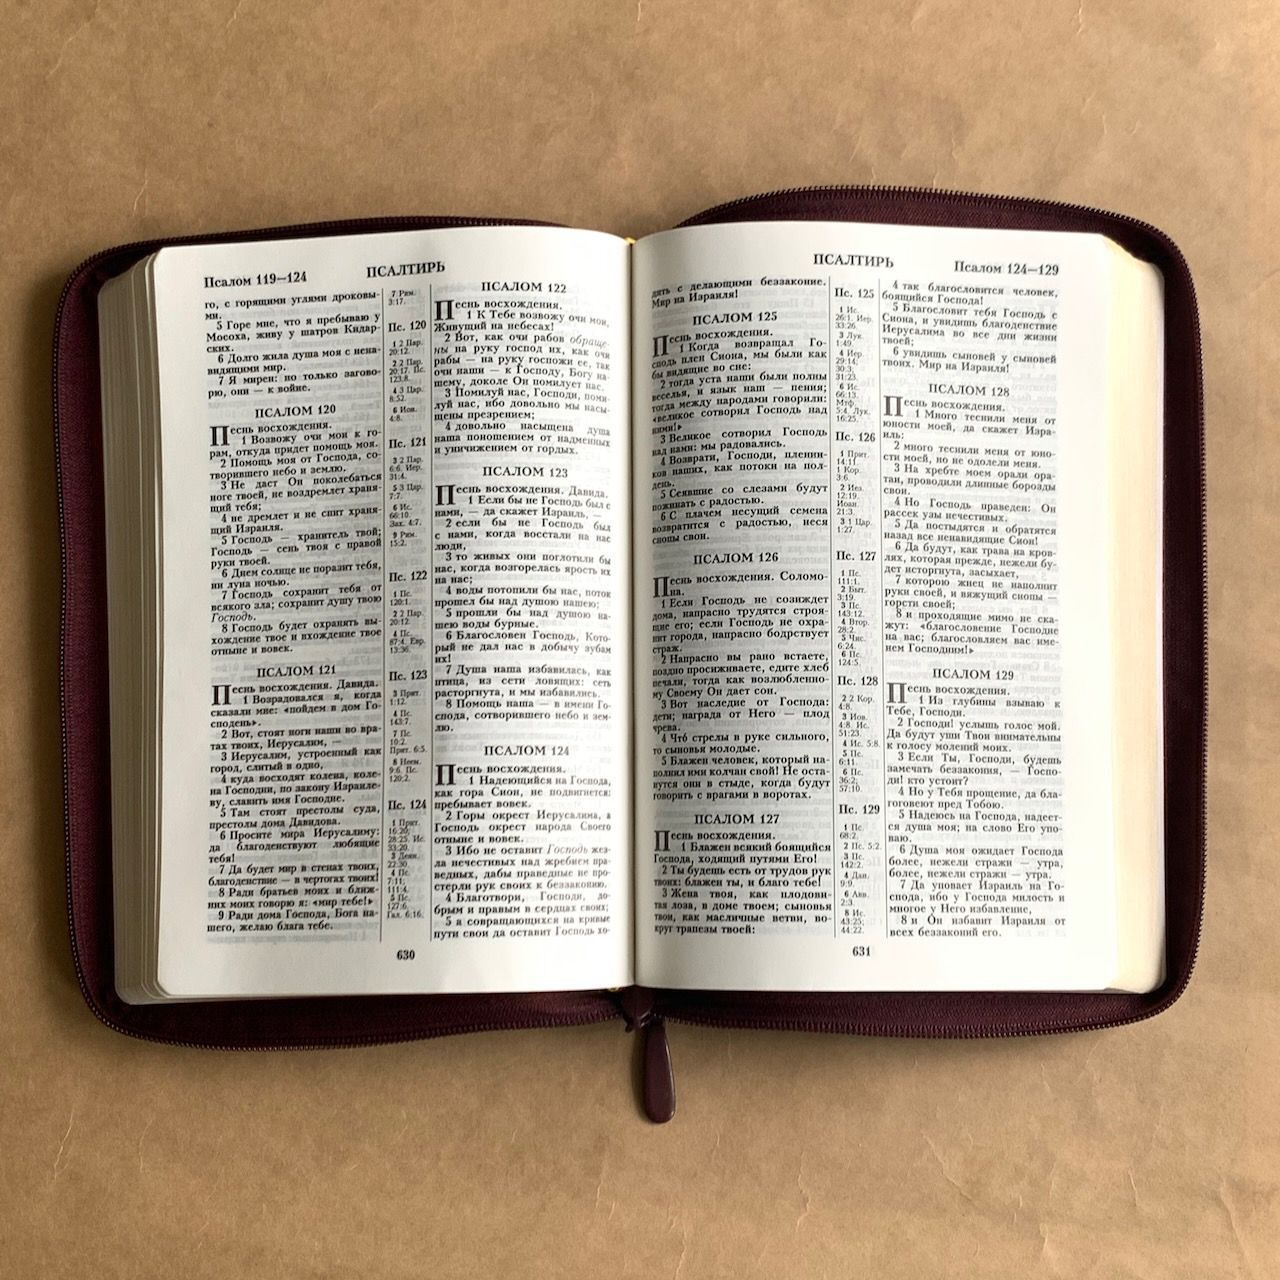 Библия 076z код B4, дизайн "золотая рамка растительный орнамент", кожаный переплет на молнии, цвет бордо пятнистый, размер 180x243 мм